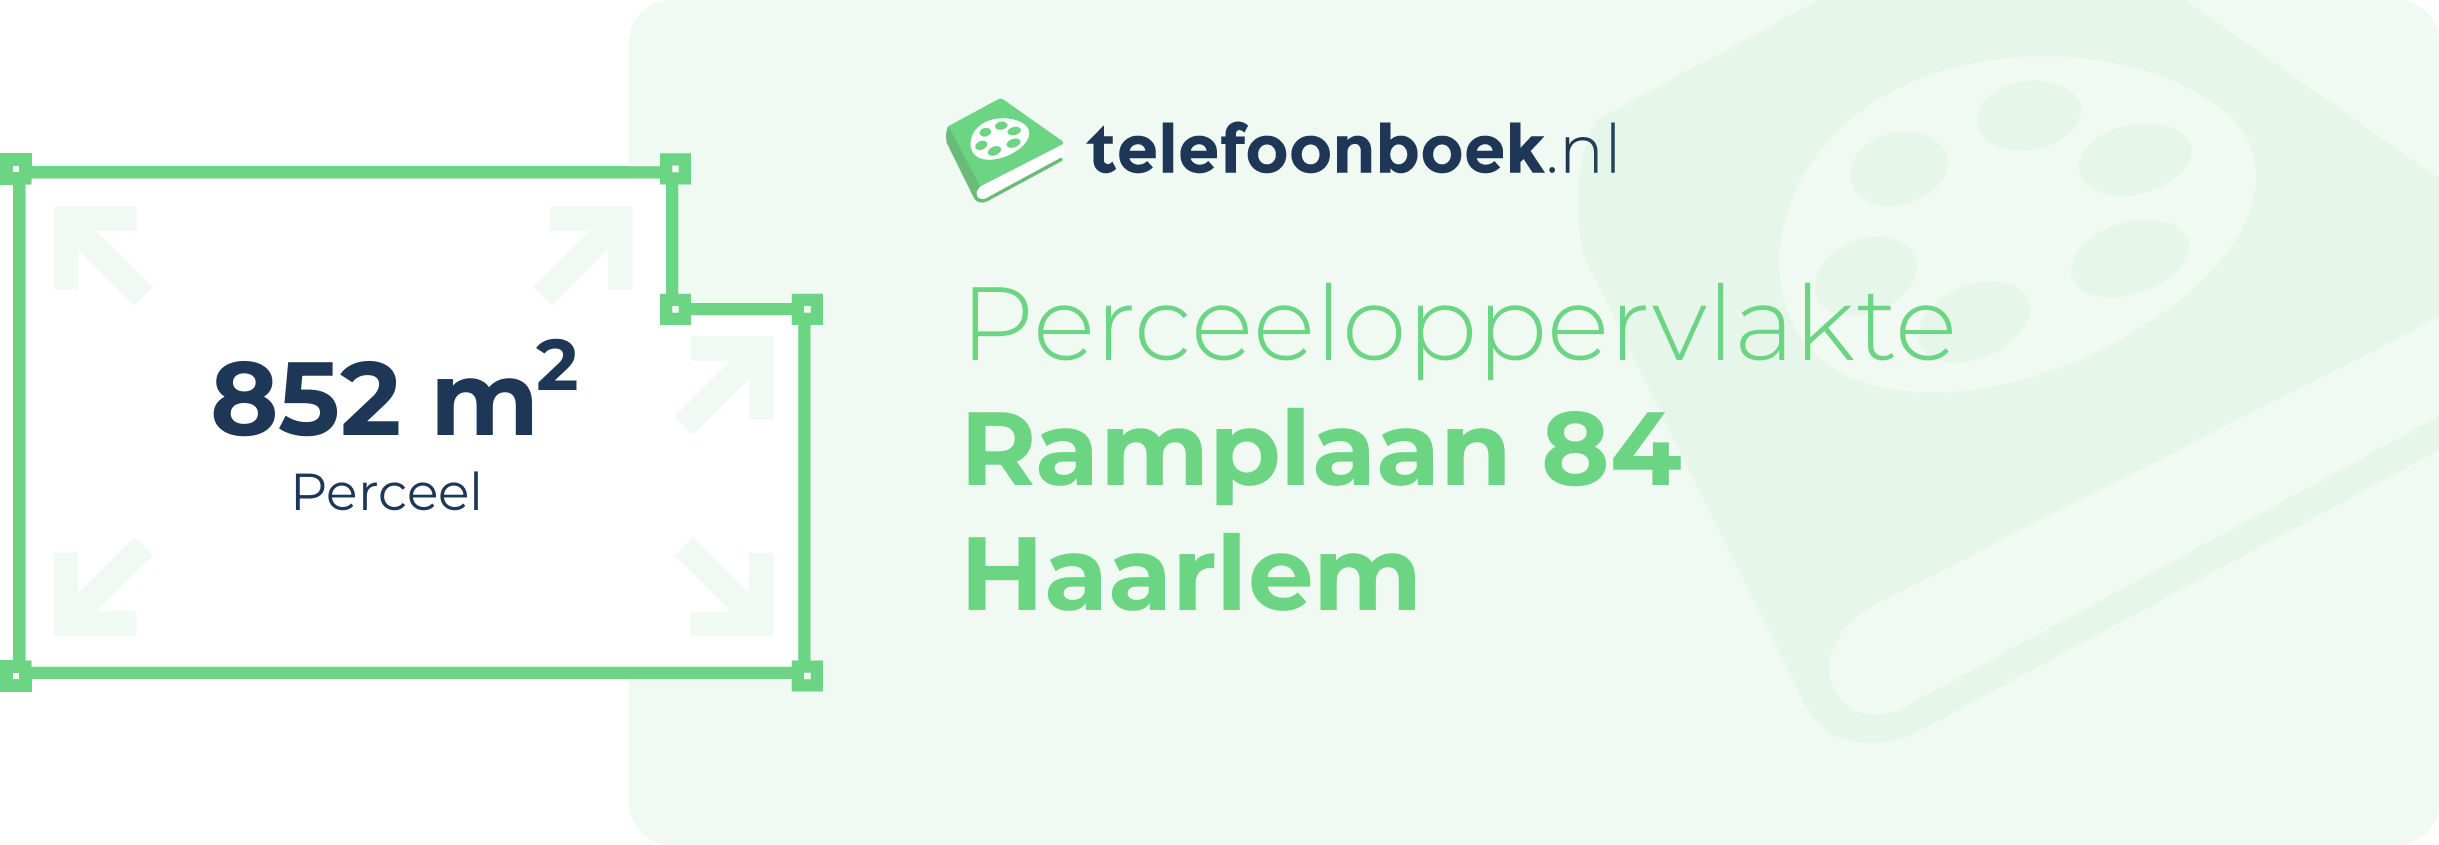 Perceeloppervlakte Ramplaan 84 Haarlem